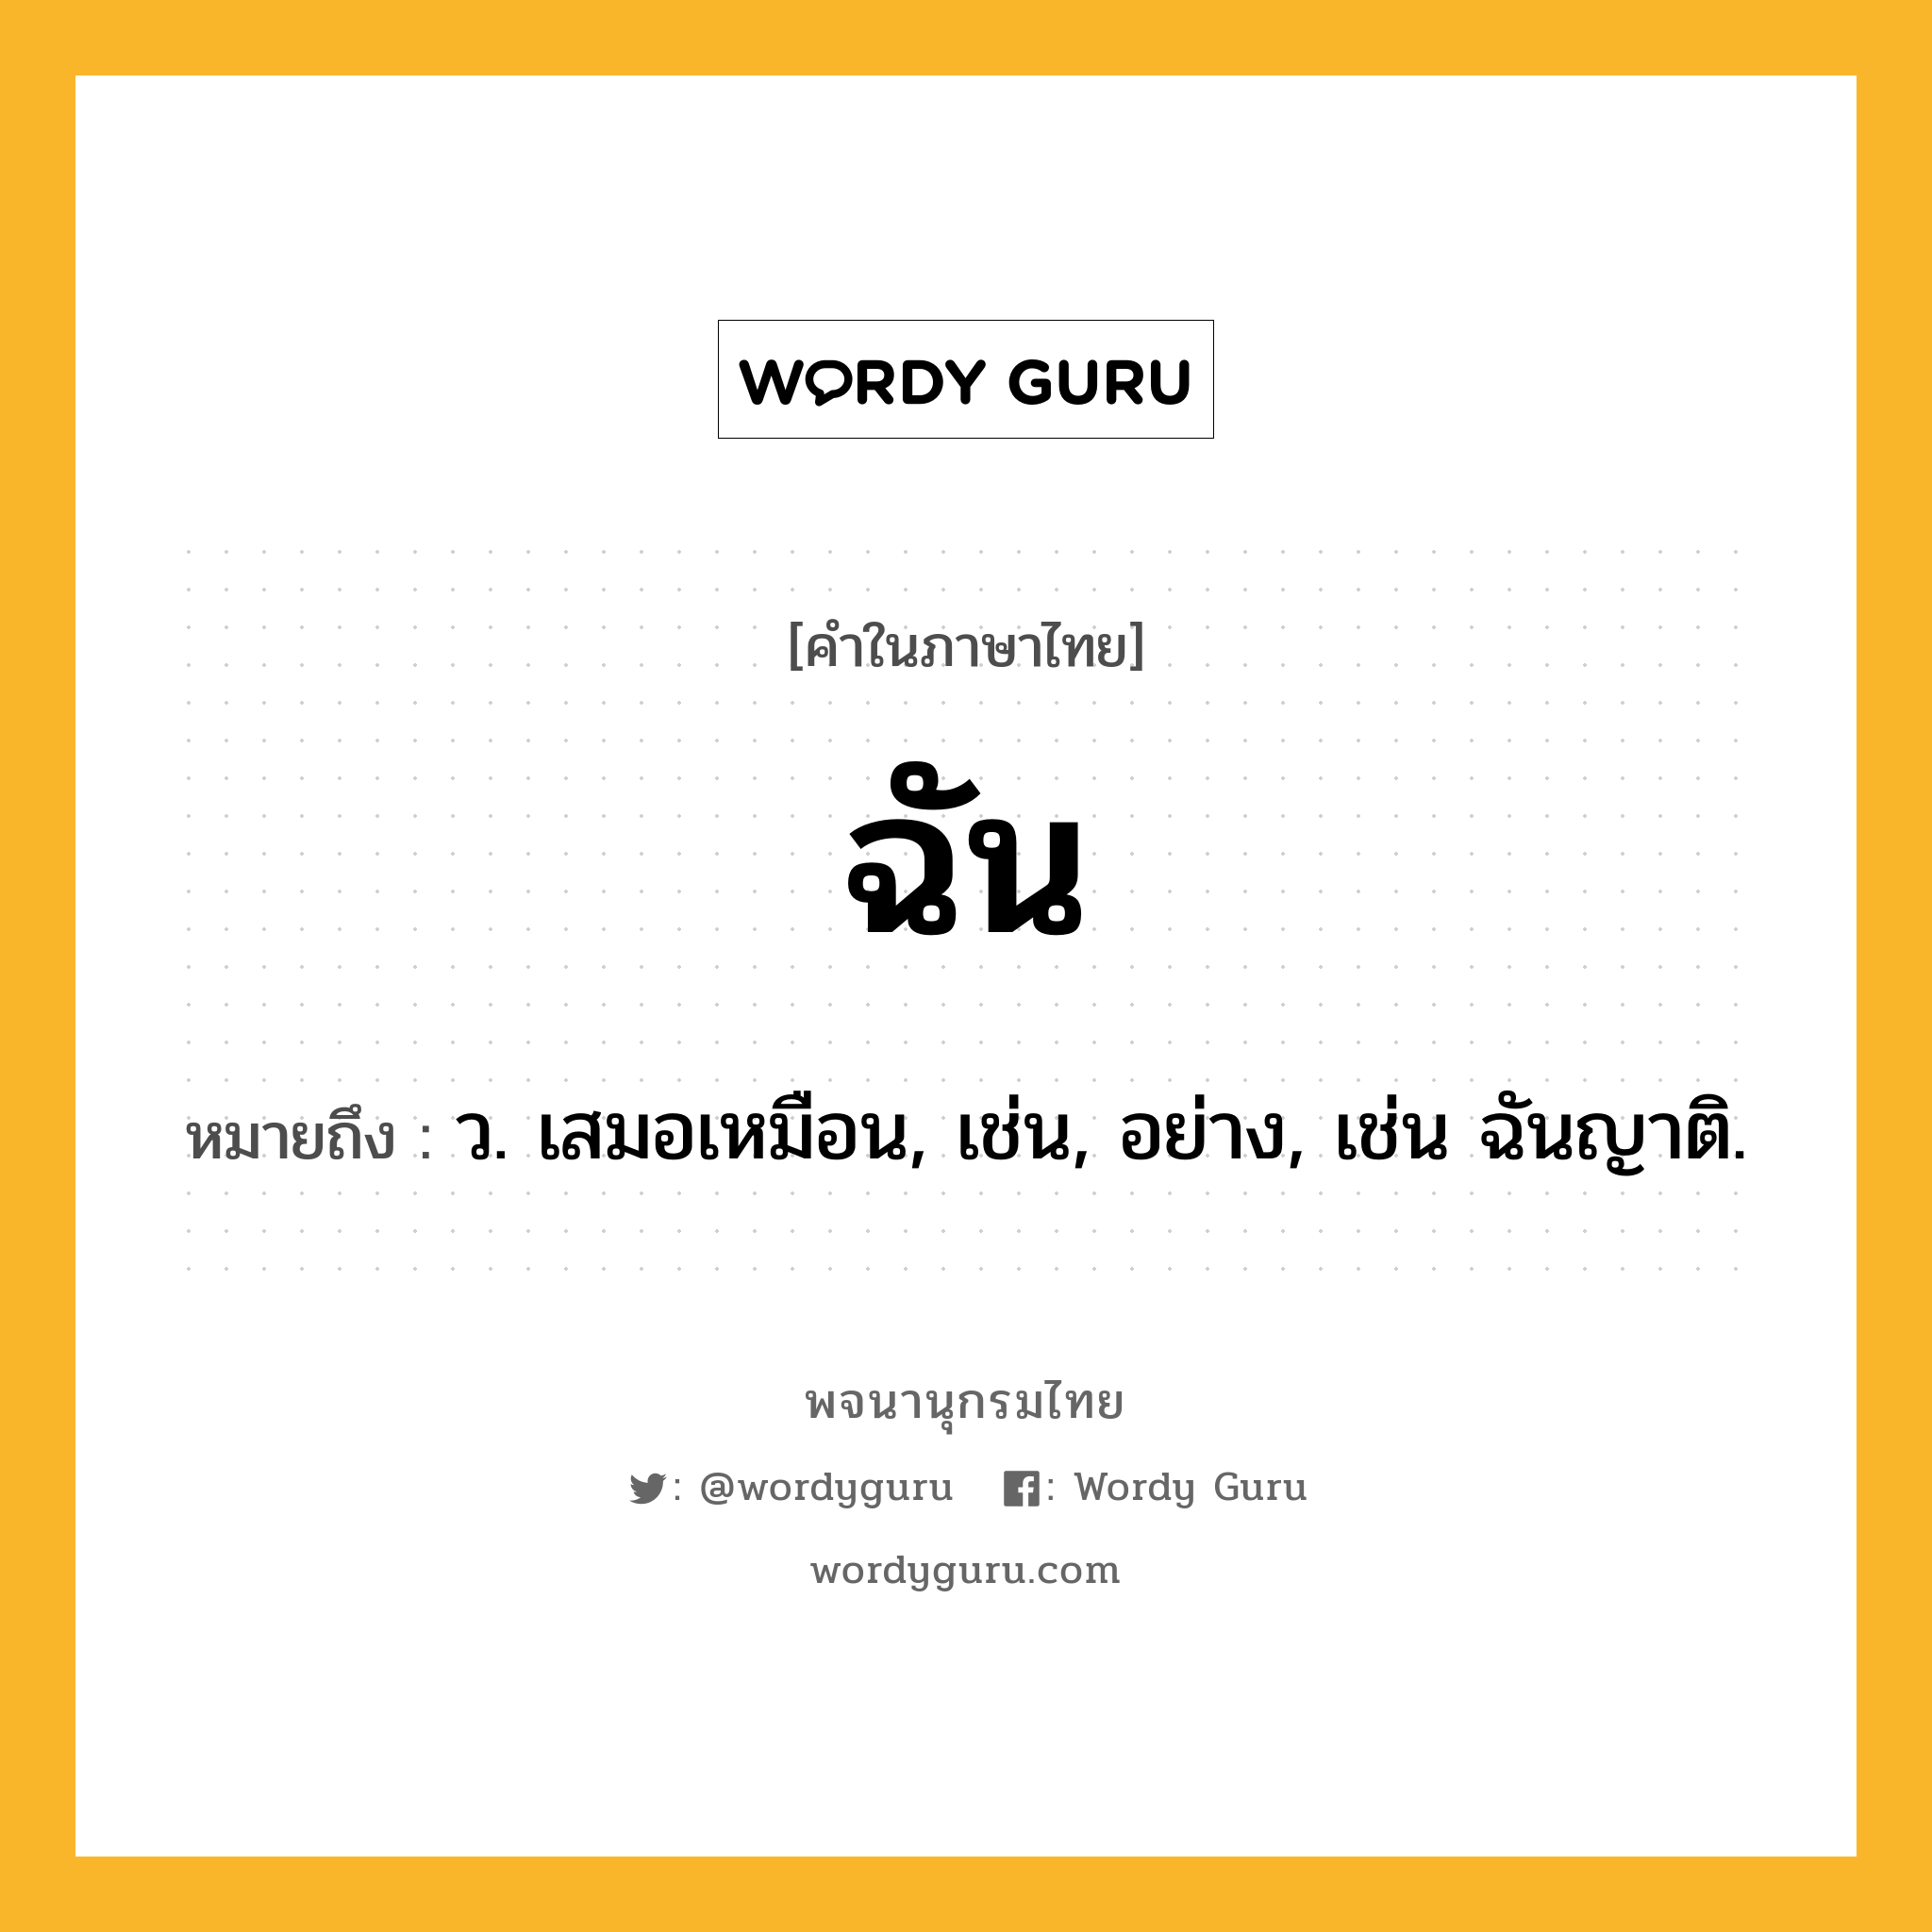 ฉัน หมายถึงอะไร?, คำในภาษาไทย ฉัน หมายถึง ว. เสมอเหมือน, เช่น, อย่าง, เช่น ฉันญาติ.